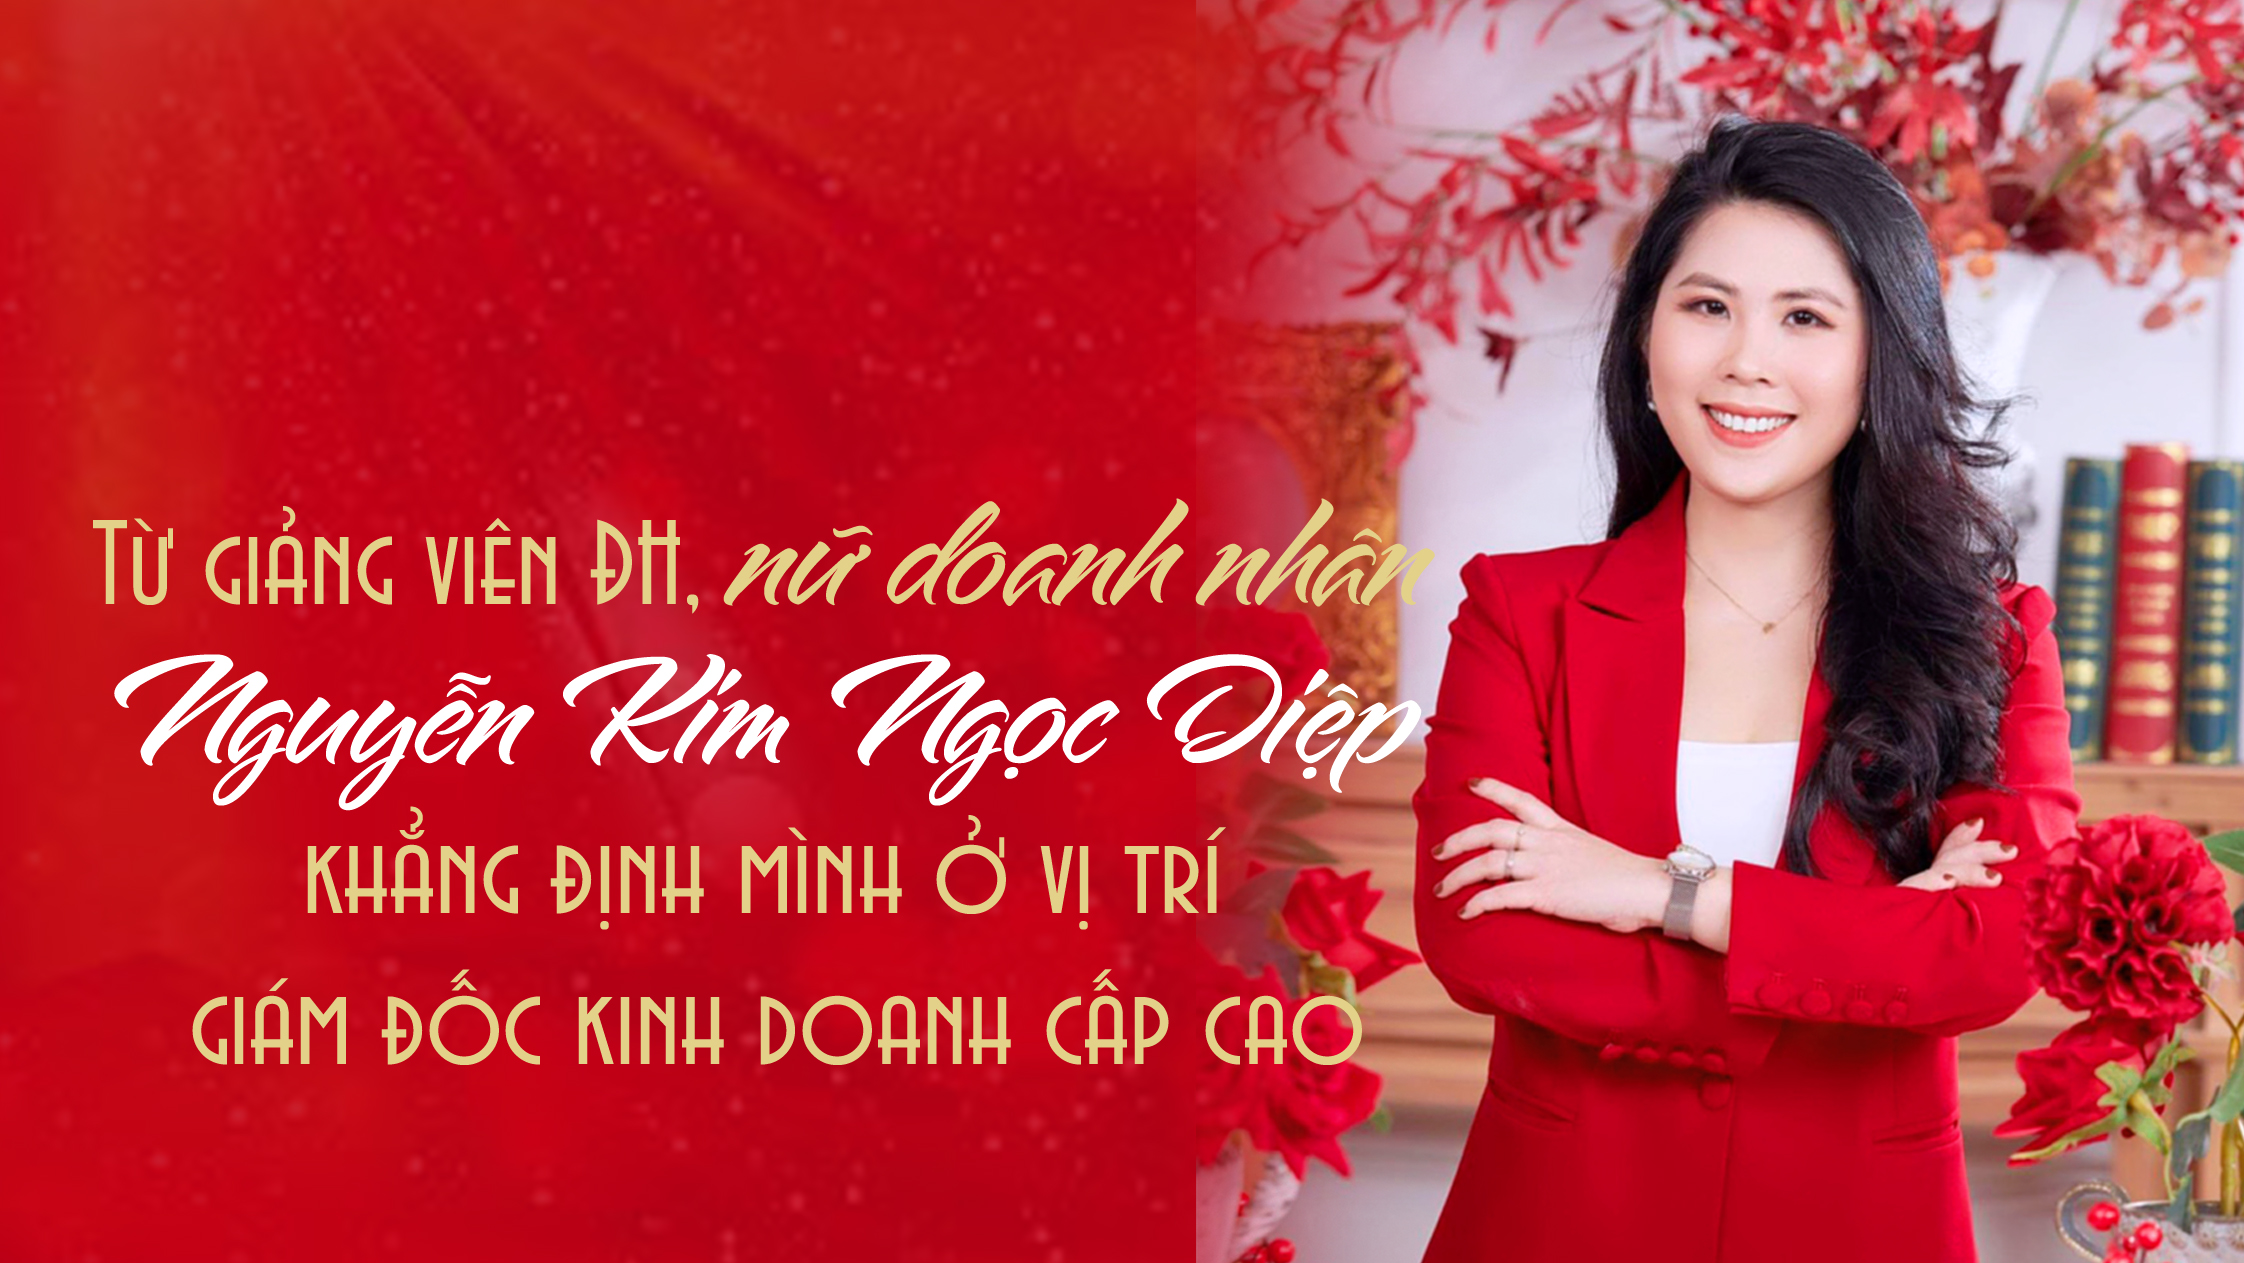 Từ giảng viên ĐH, nữ doanh nhân Nguyễn Kim Ngọc Diệp khẳng định mình ở vị trí giám đốc kinh doanh cấp cao